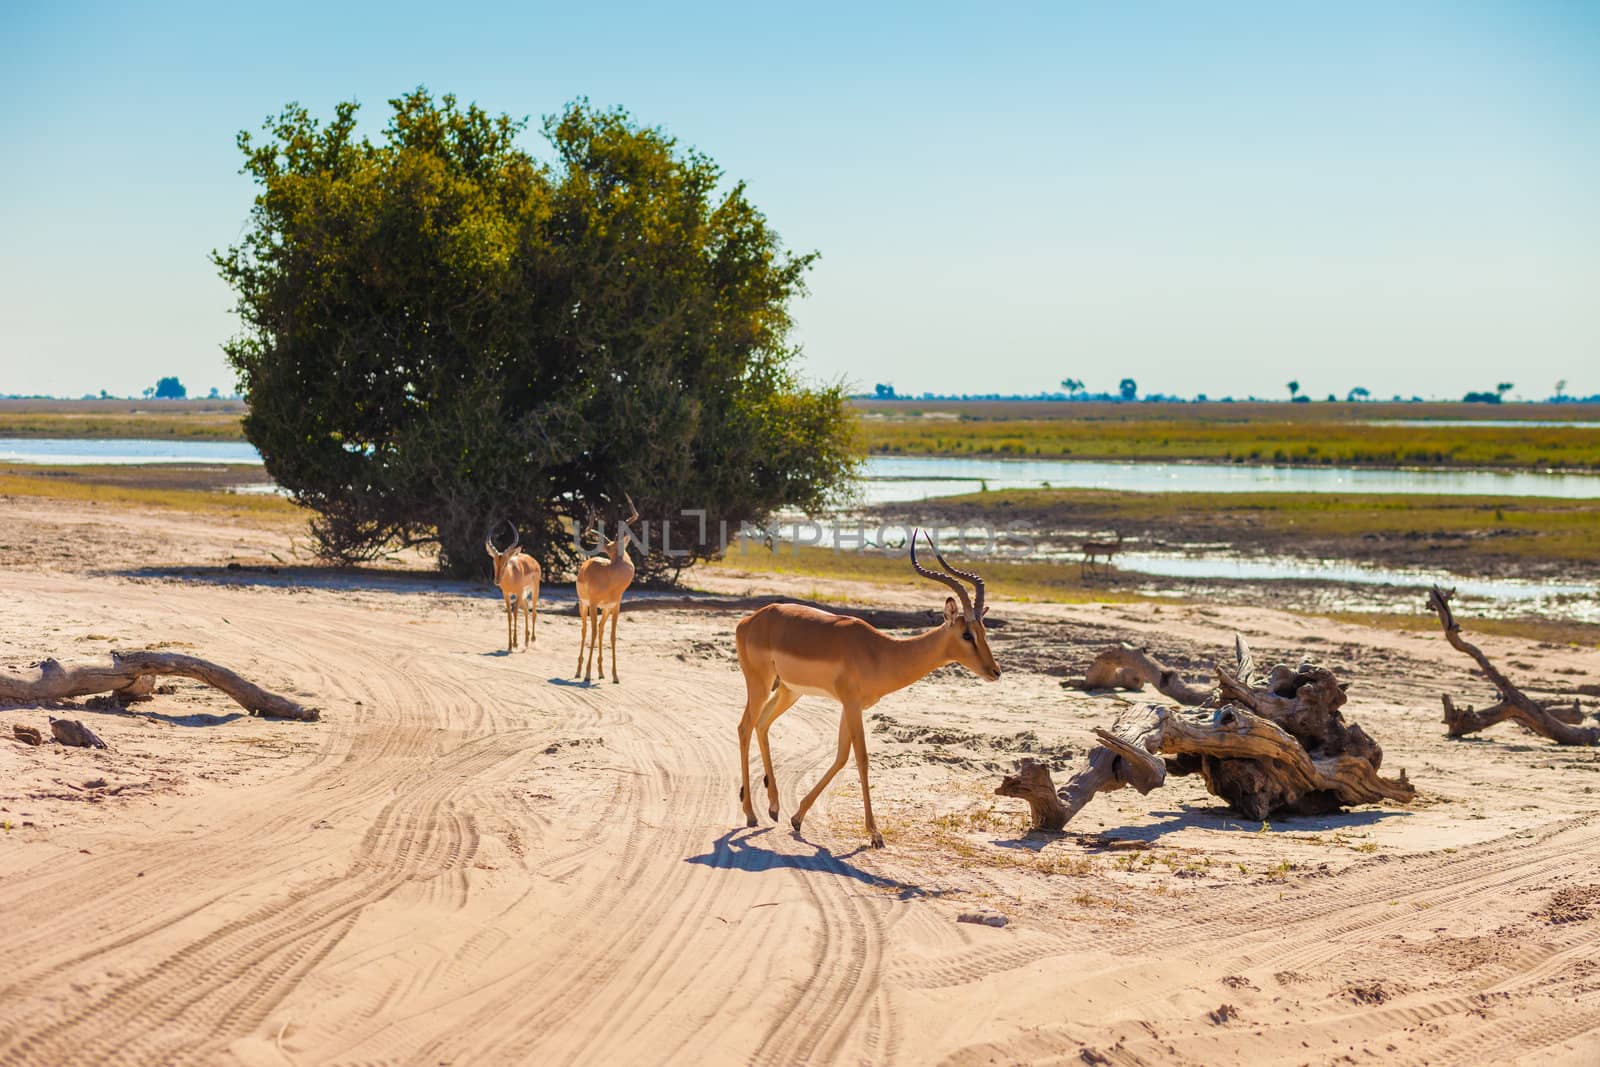 Impala (Aepyceros melampus) walking, Chobe National Park, Botswana